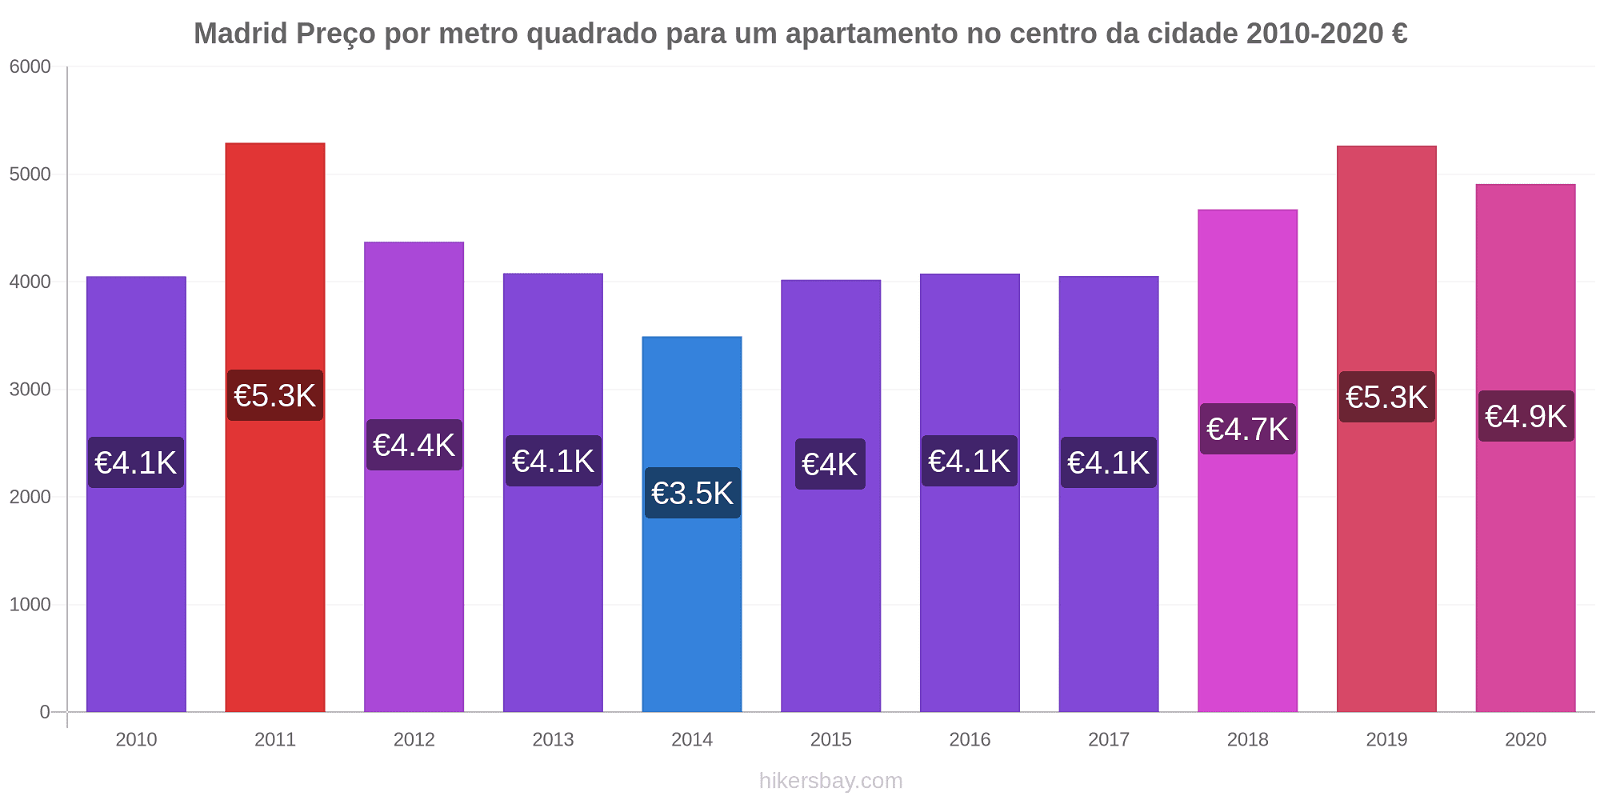 Madrid variação de preço Preço por metro quadrado para um apartamento no centro da cidade hikersbay.com